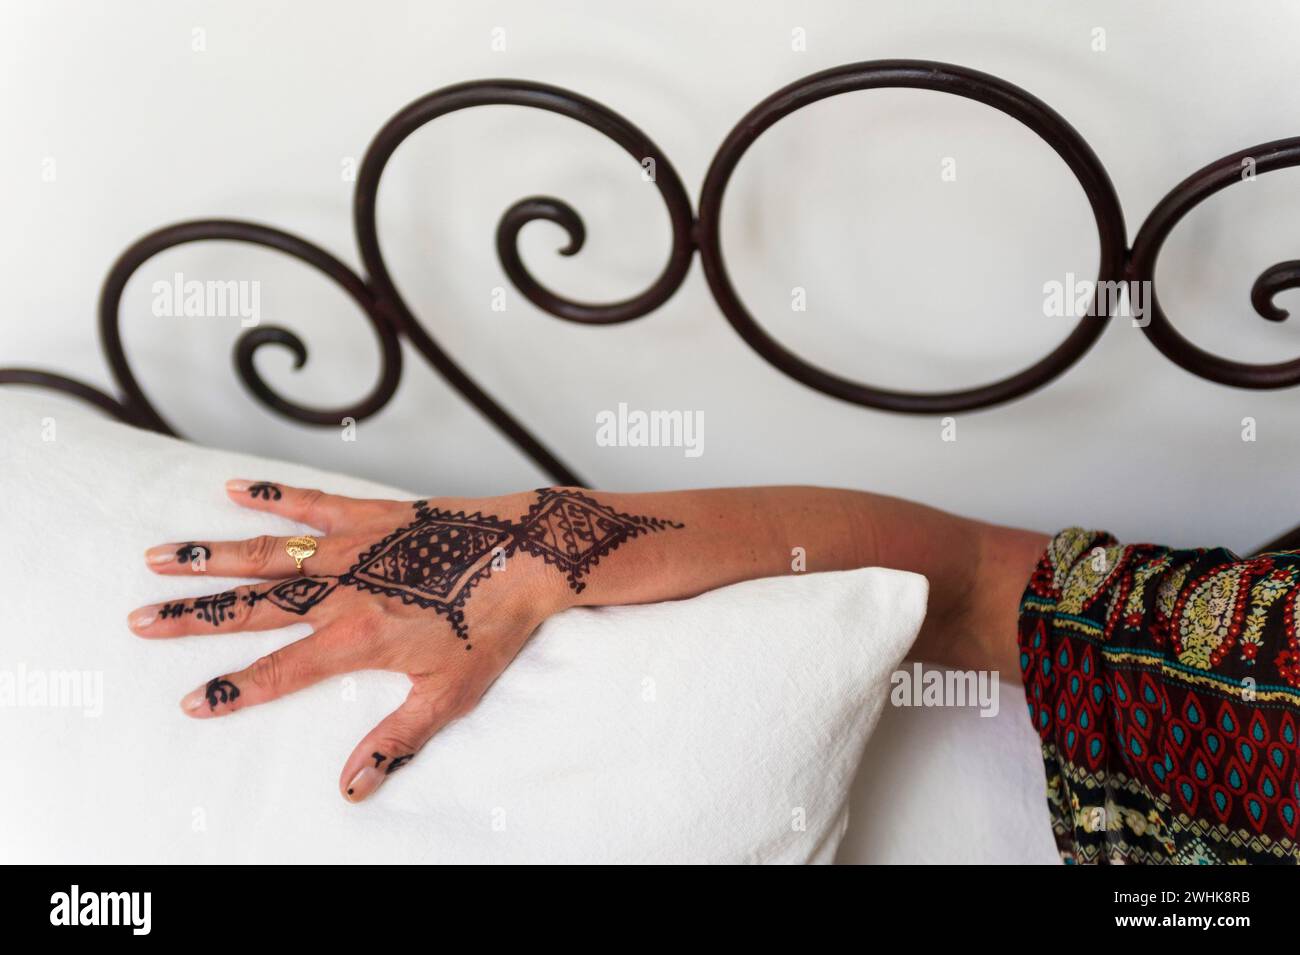 Tatouage traditionnel marocain à la main, henné, tatouage, artisanat, tradition, traditionnel, oriental, arabe, couleur végétale, décoration corporelle, motif, personnalisé Banque D'Images